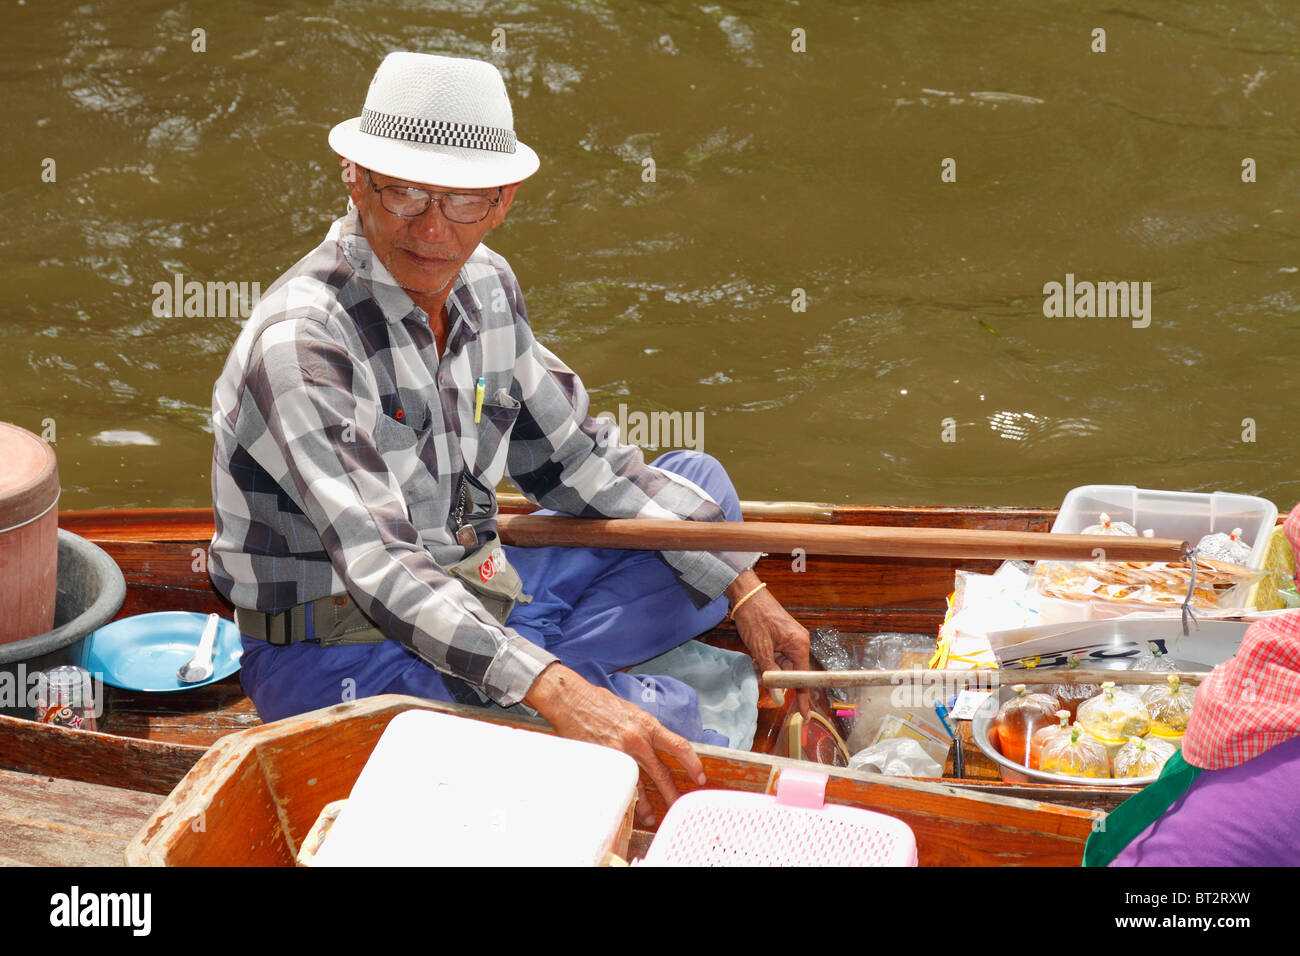 Personnes âgées Thai Man vendeur vendre de la nourriture à sa barque (barque), au Marché Flottant, Bangkok, Thaïlande, septembre 2010 Banque D'Images